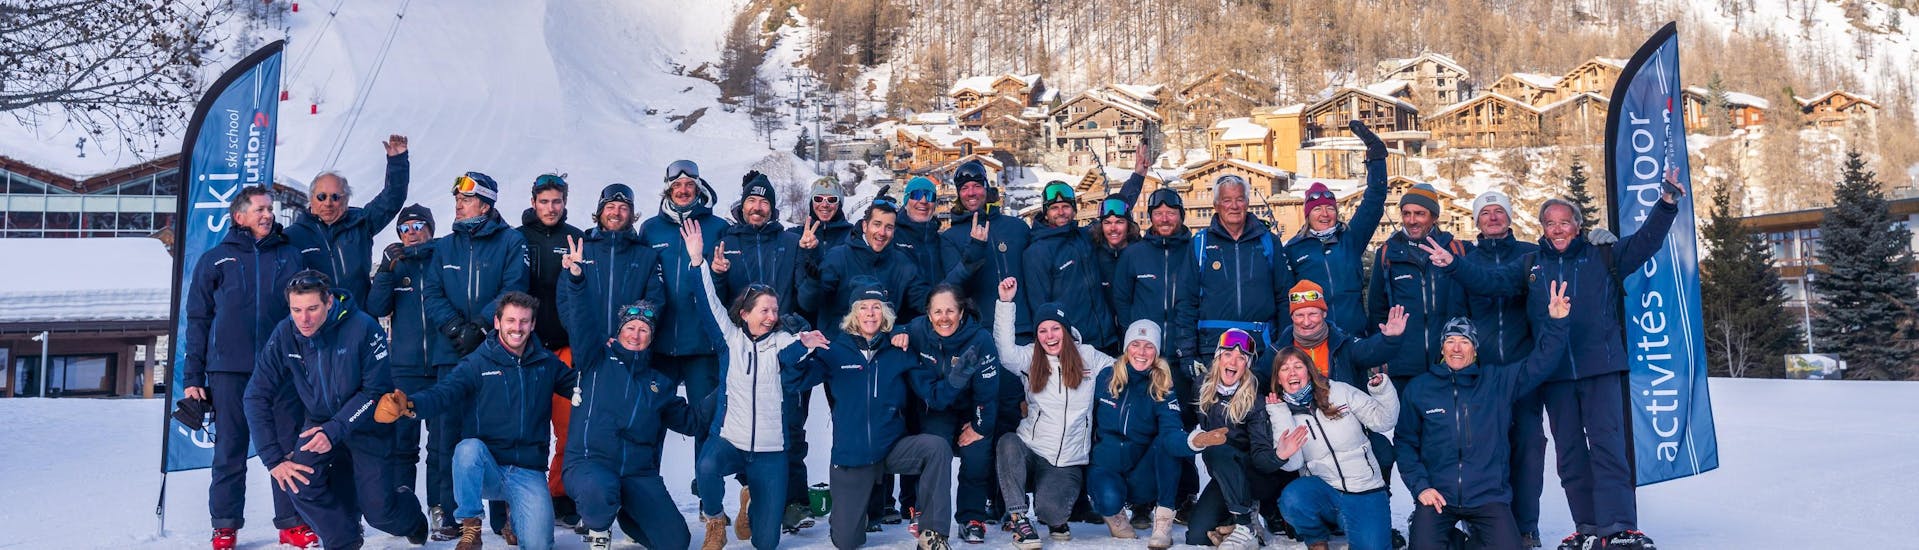 Equipe de moniteur de ski chez Evolution 2 Val d'Isère.